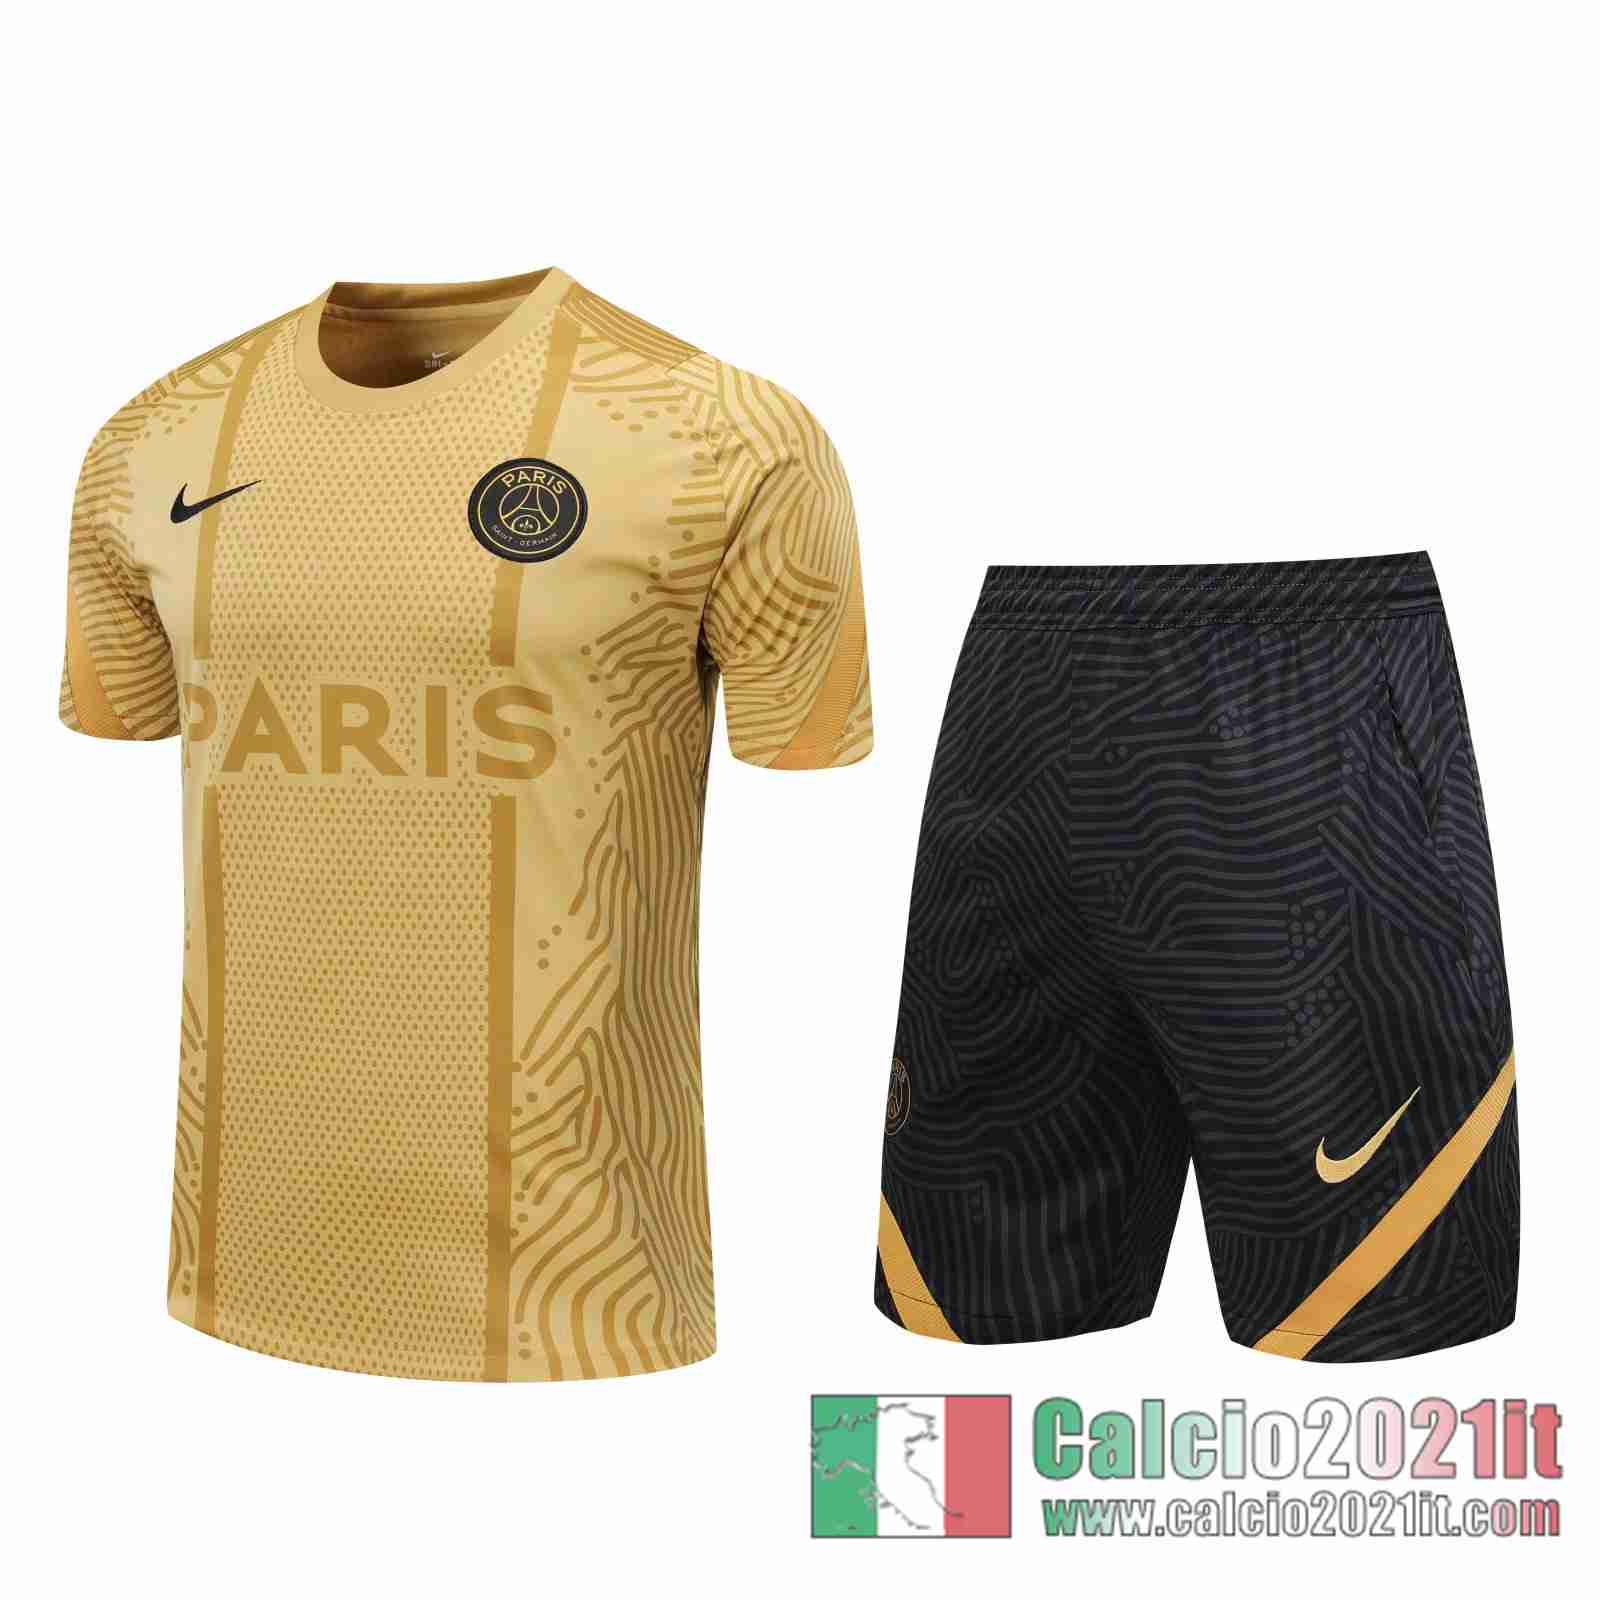 Paris Magliette Tuta Calcio Naturale Modello dell'acqua 2020 2021 T76